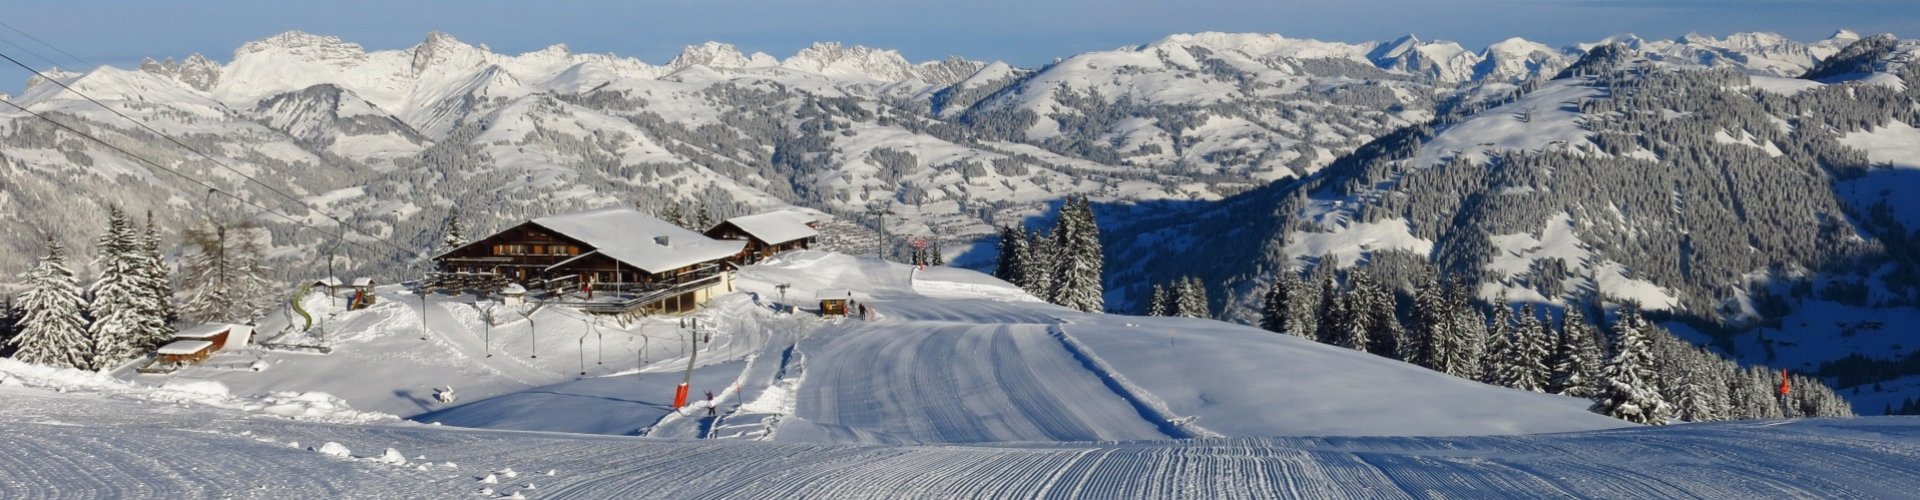 Skigebiet Gstaad